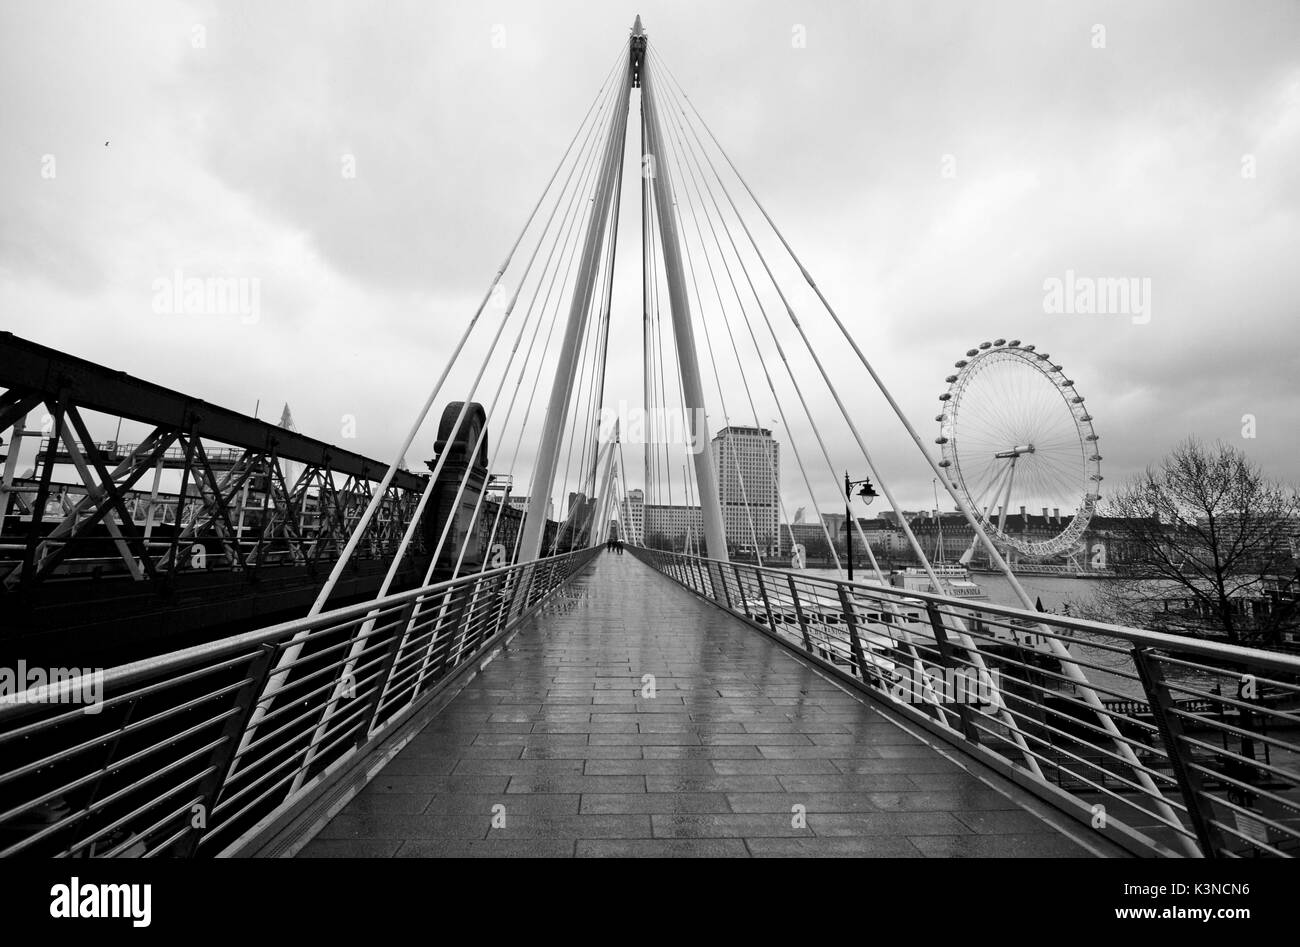 Il Golden Jubilee Bridge dispone di una moderna architettura che ricorda i triangoli e sulla sinistra la London Eye, in una giornata di pioggia. Londra, Inghilterra, l'Europa. Foto Stock